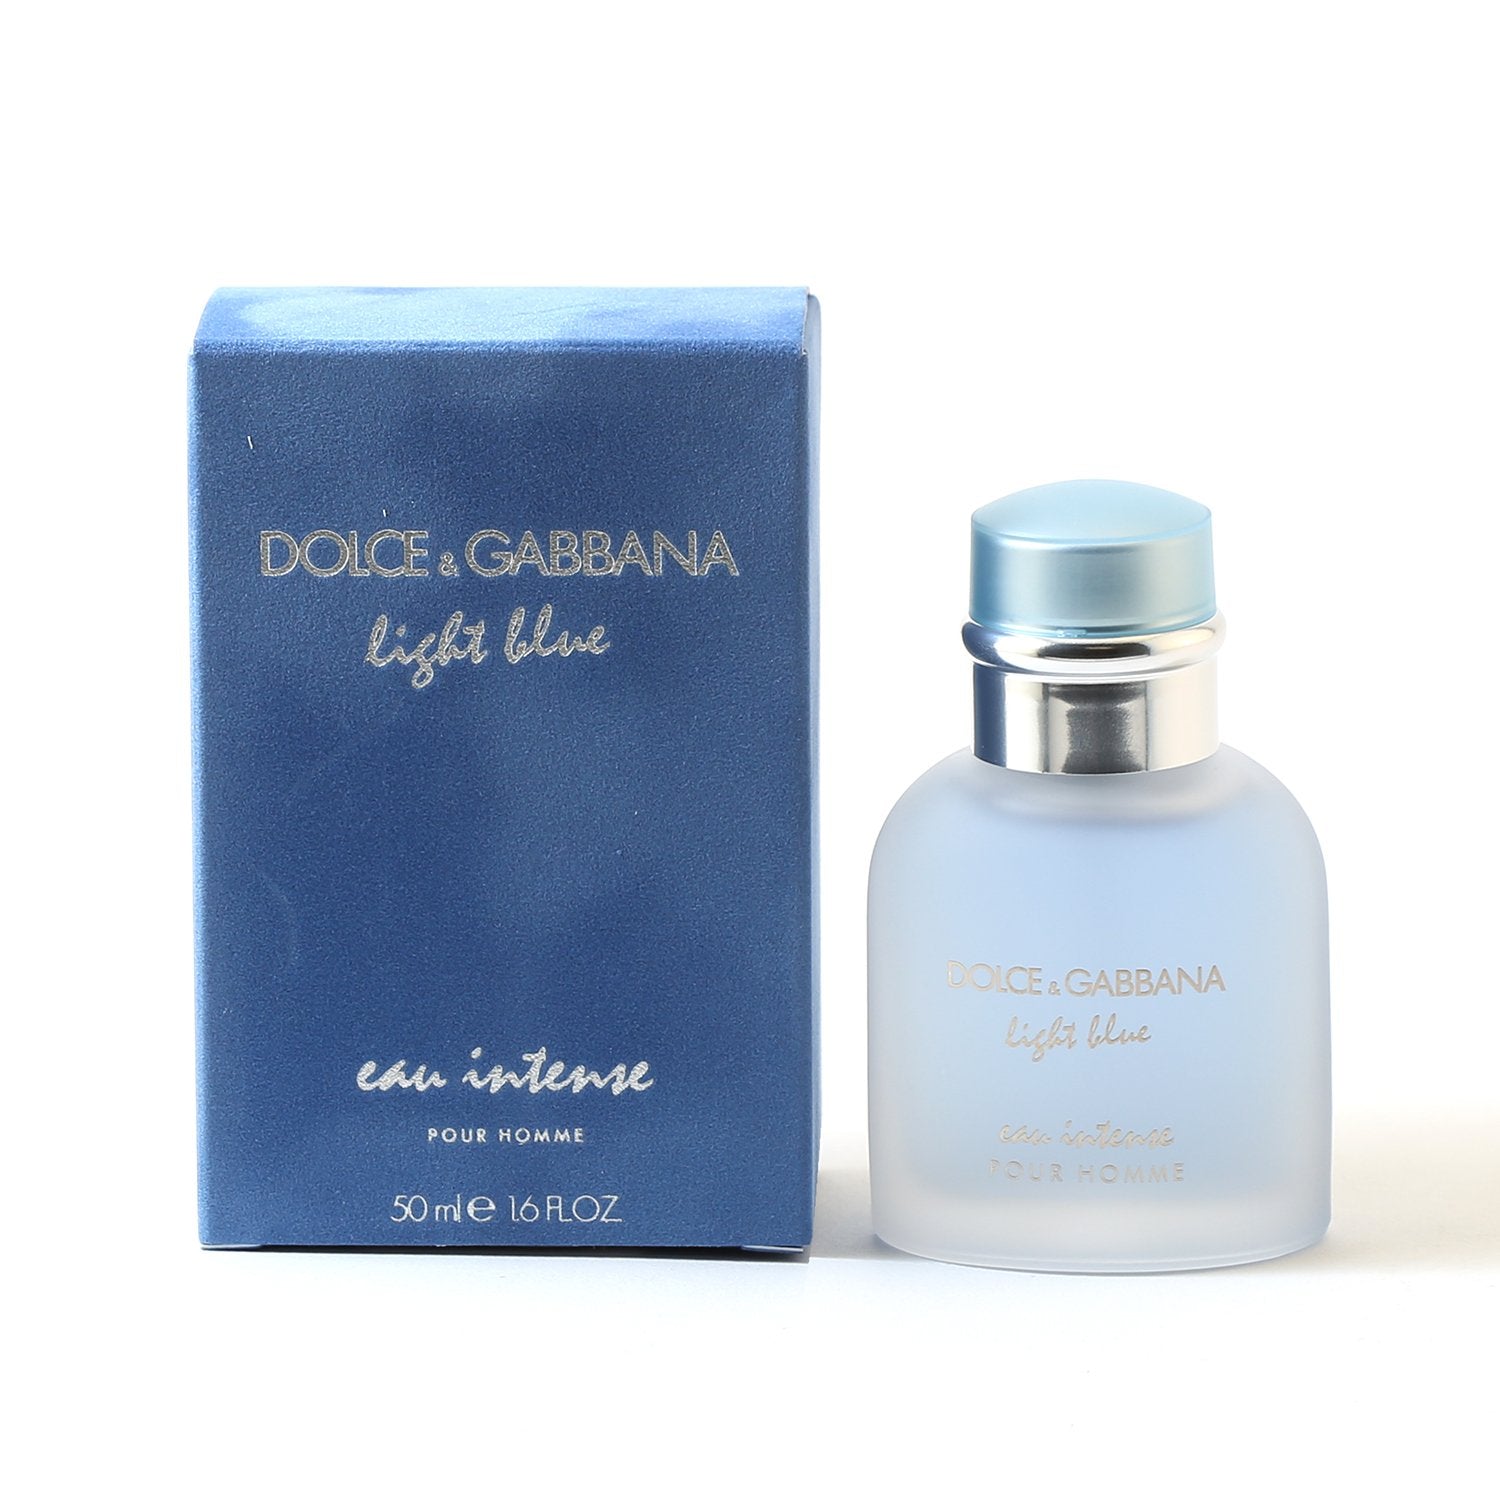 dolce and gabbana light blue for men